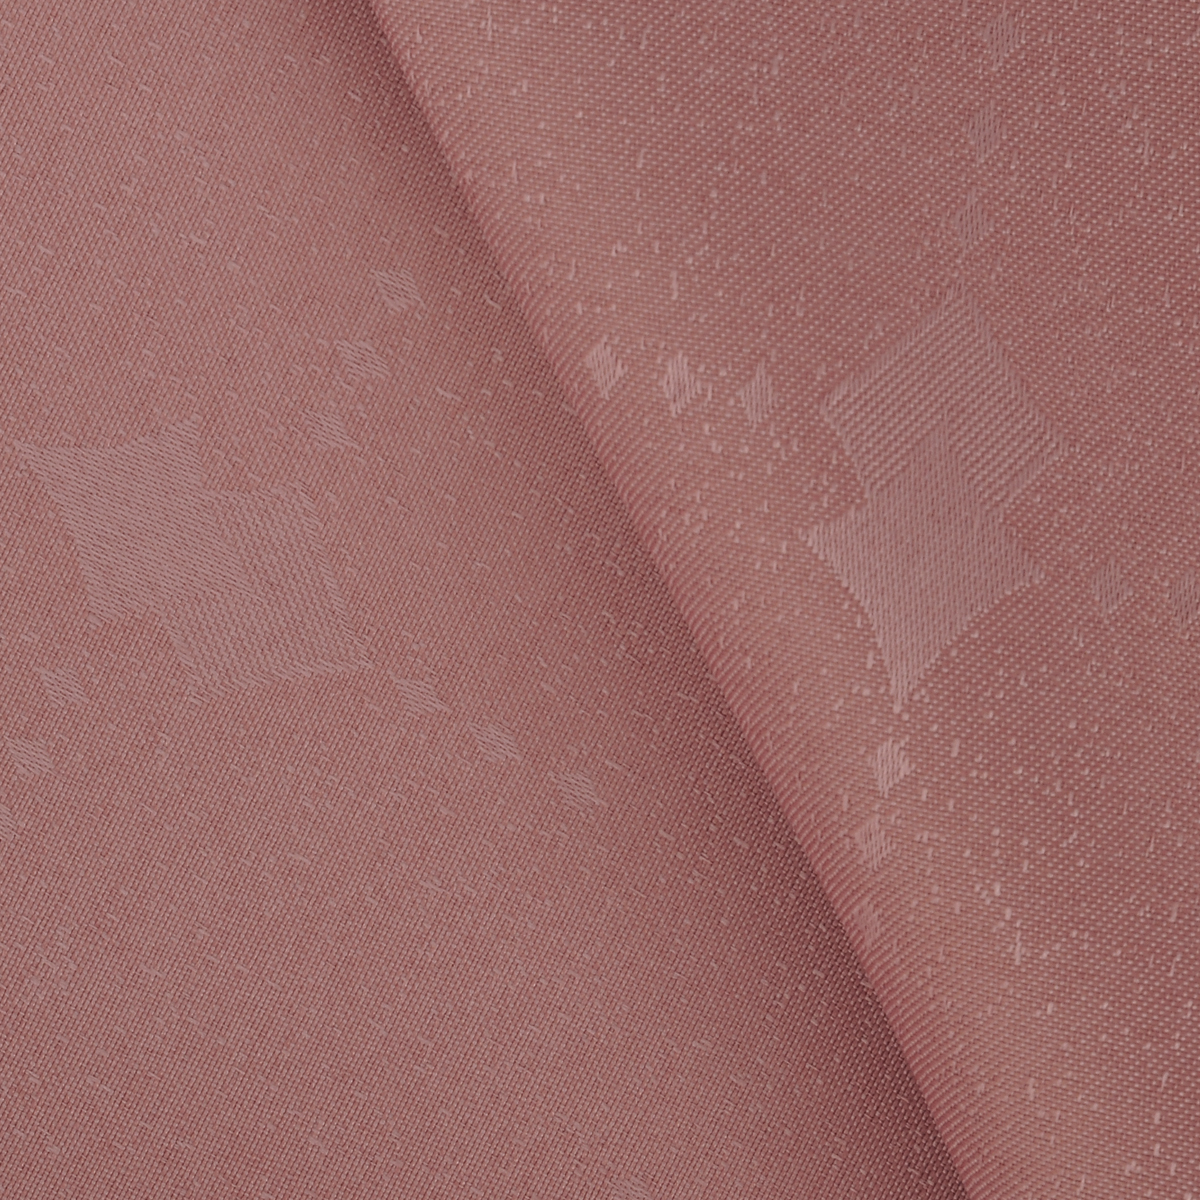 Скатерть "Schaefer", прямоугольная, цвет: пепельно-розовый, 130 х 160 см. 07508-427